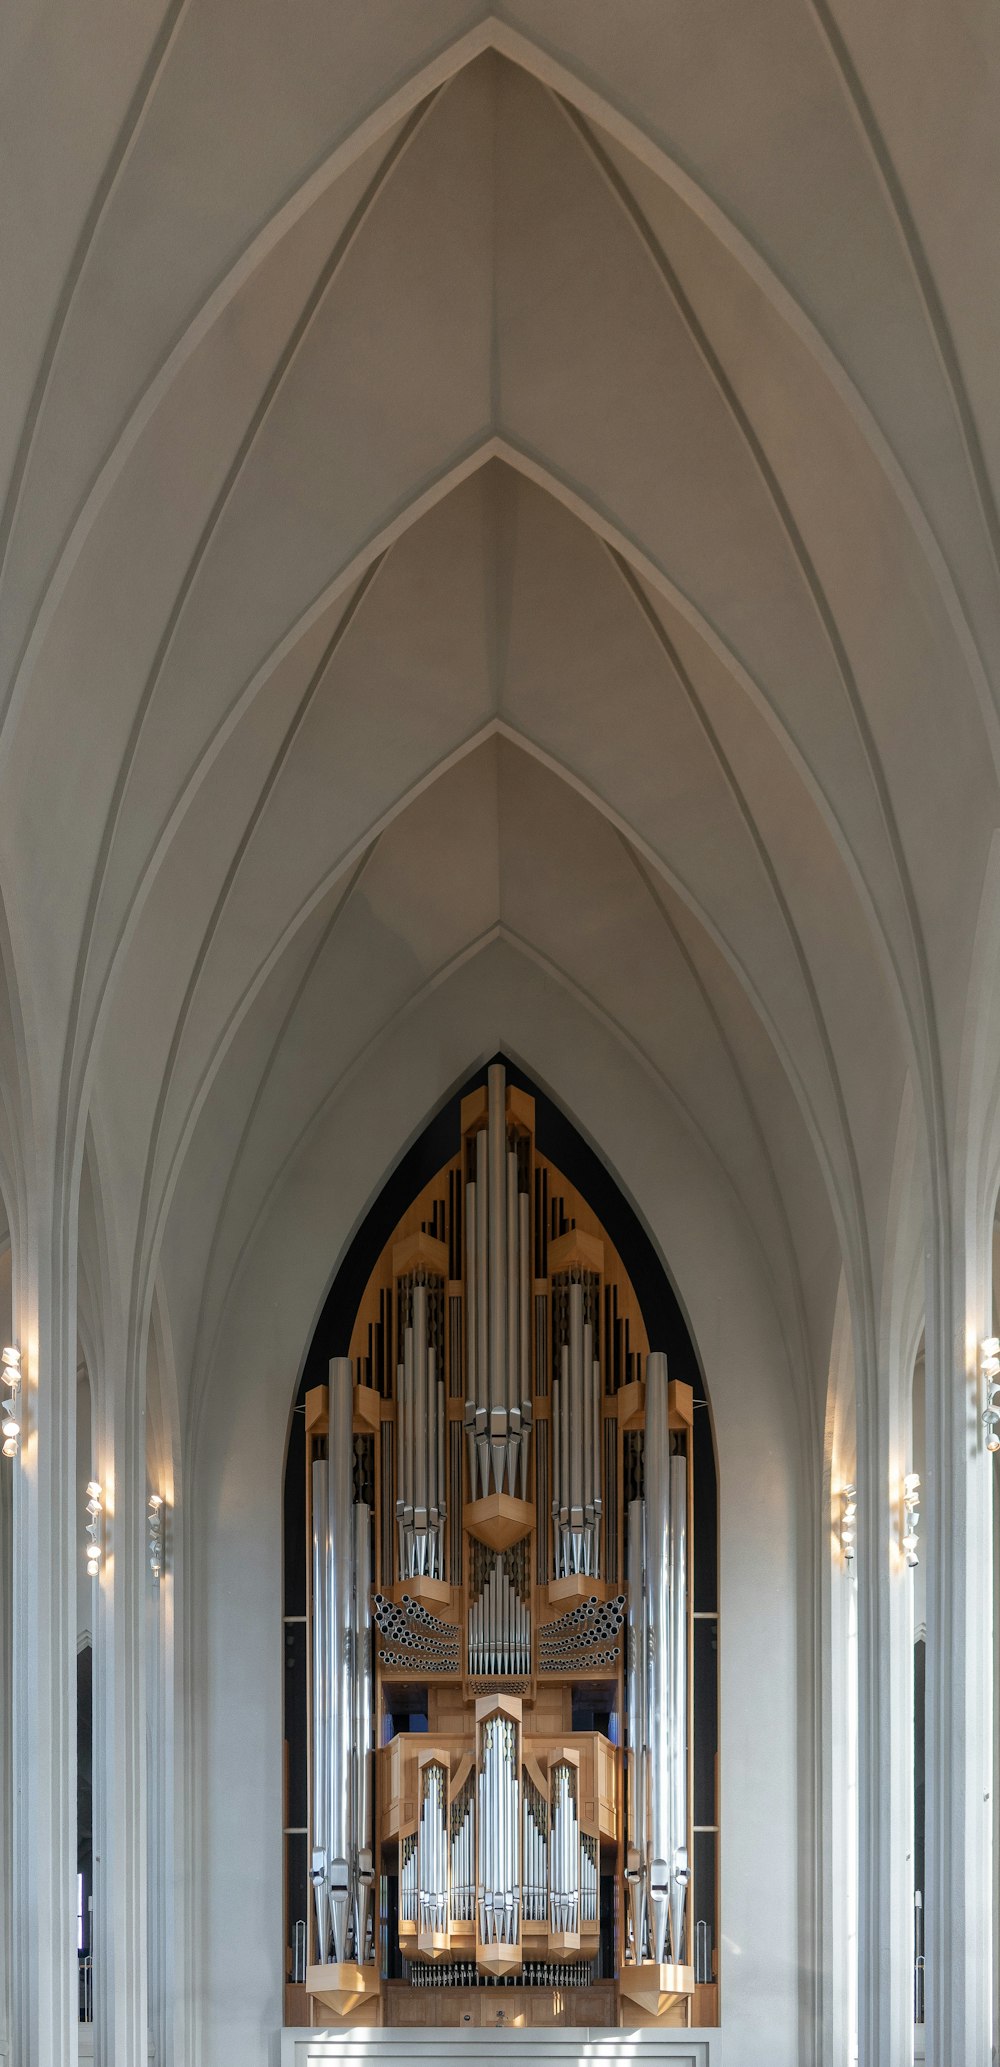 Intérieur de la cathédrale peint en gris